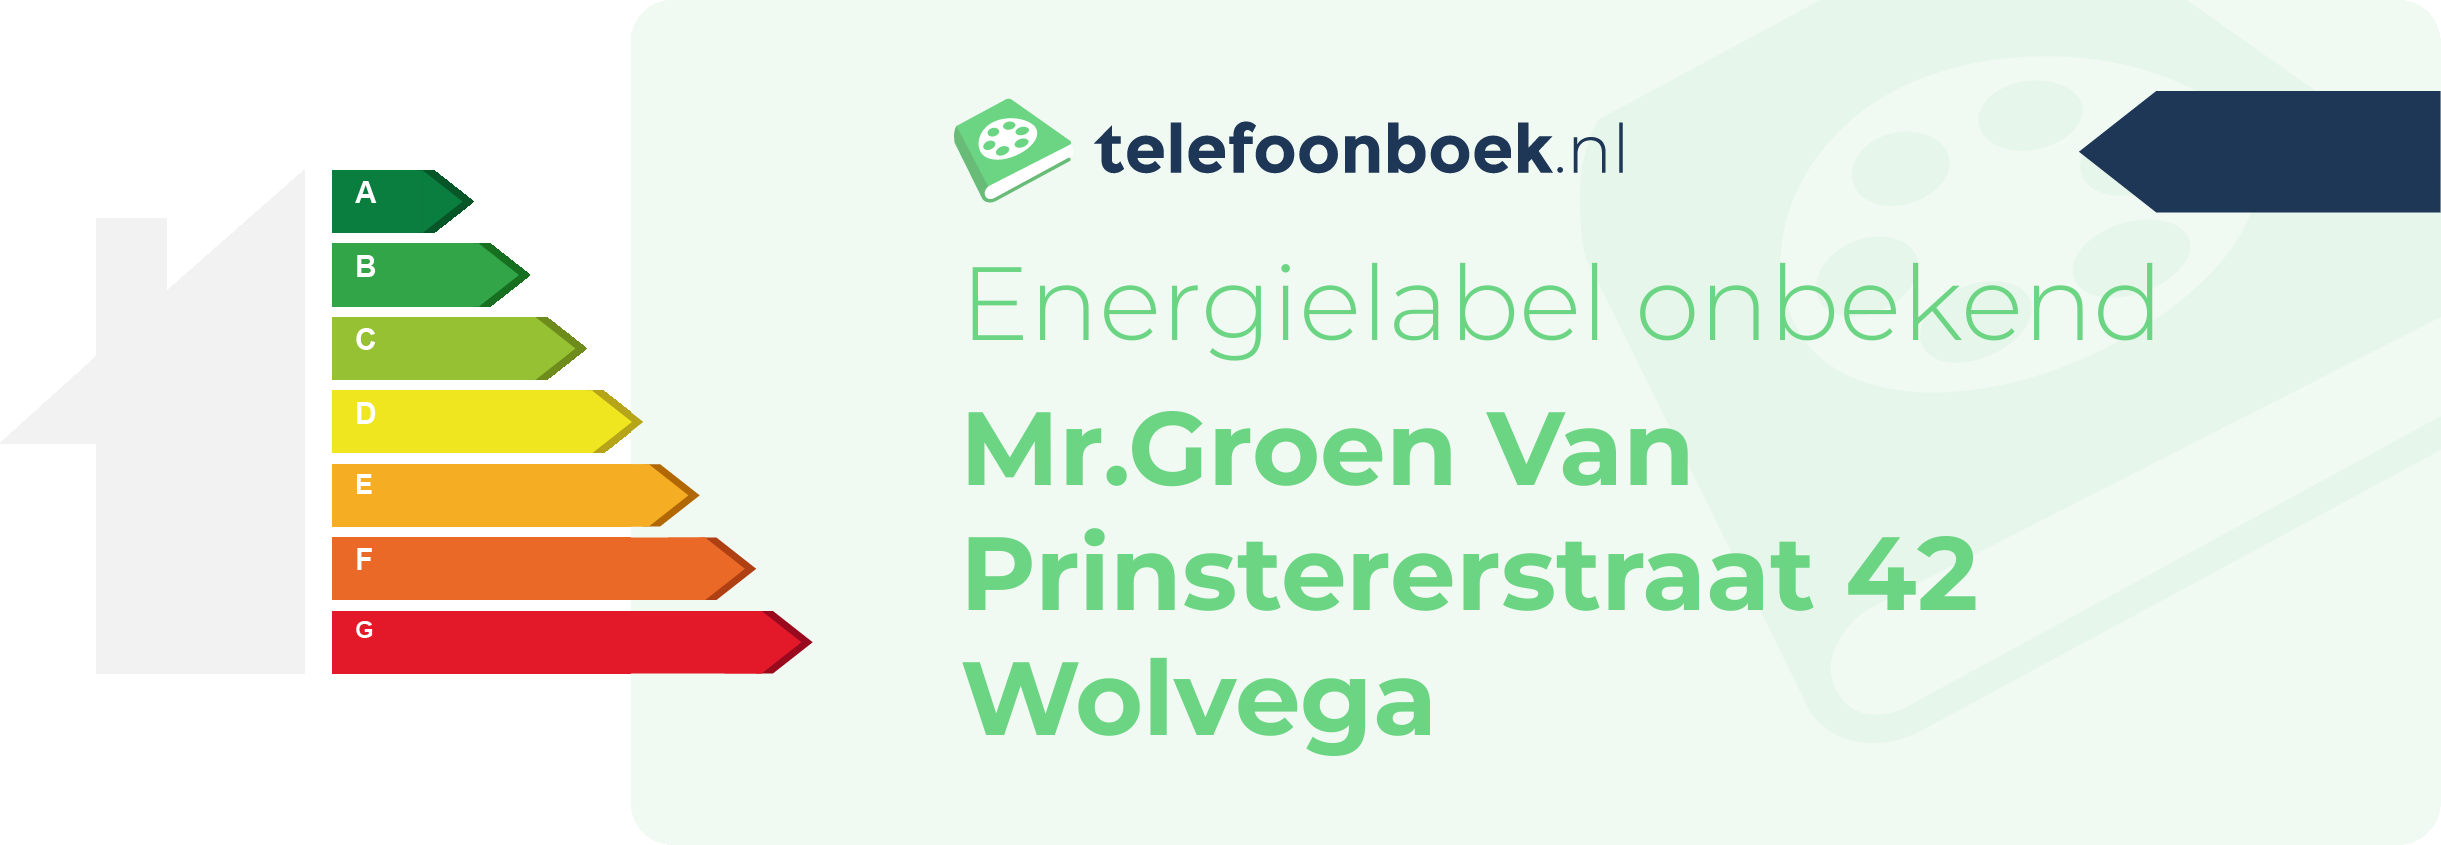 Energielabel Mr.Groen Van Prinstererstraat 42 Wolvega